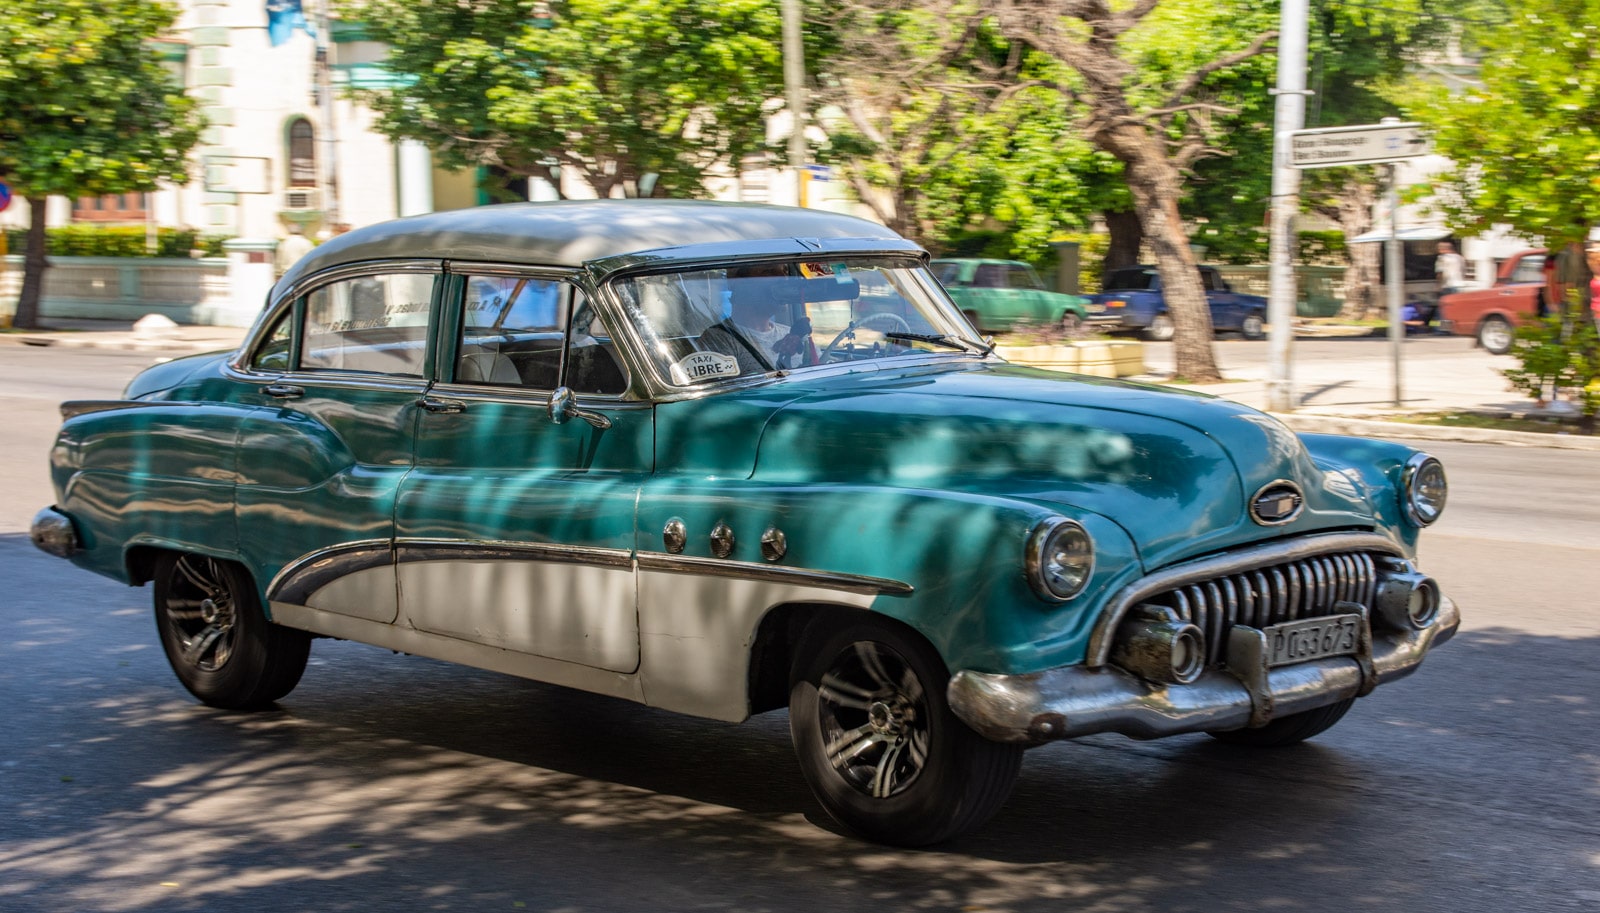 Hawana - stare samochody